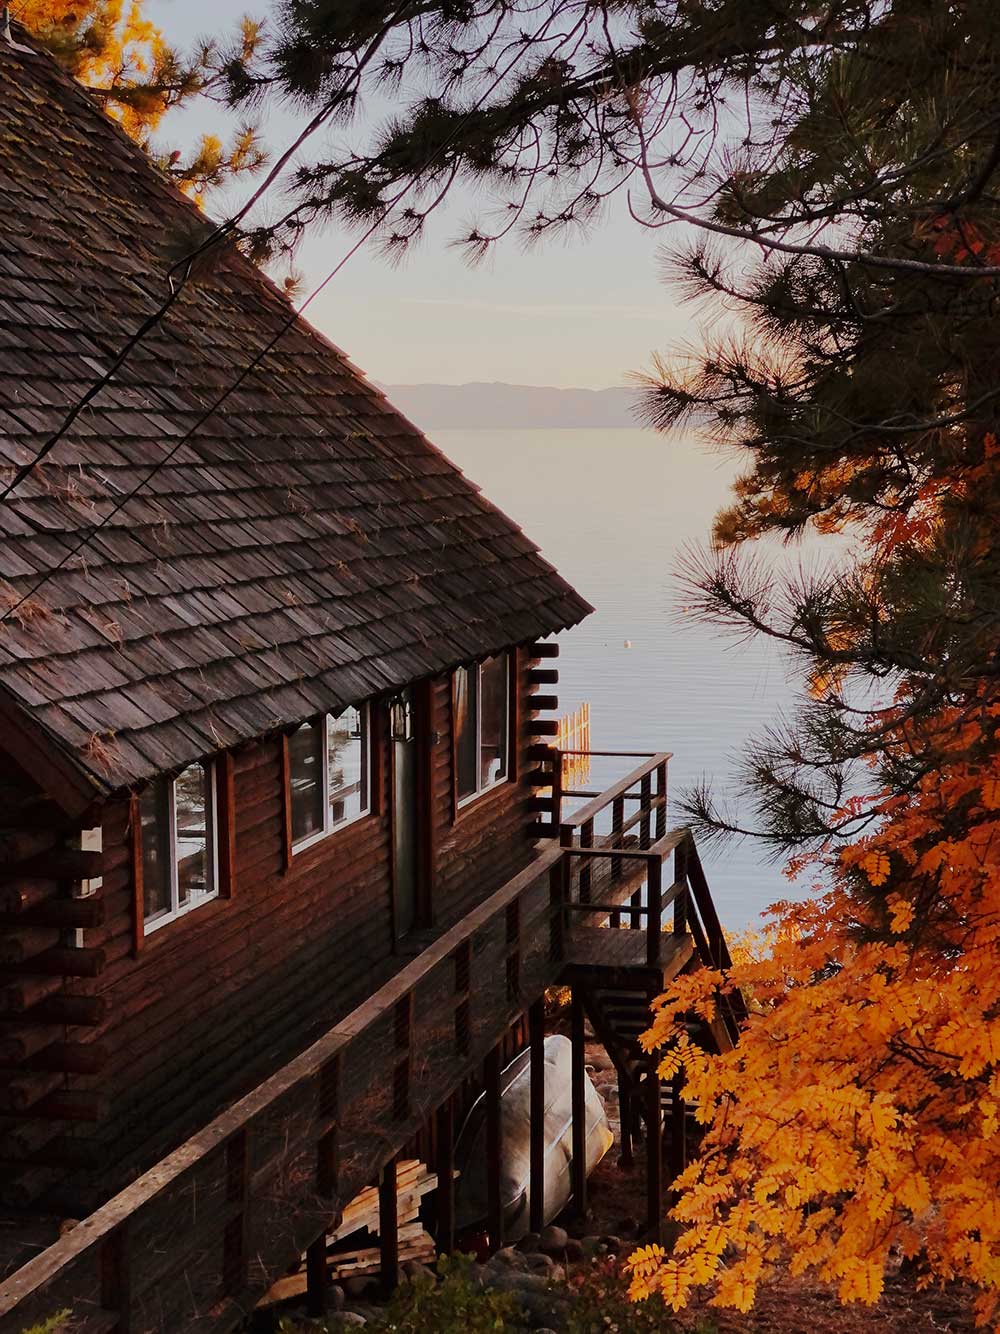 A cabin near the lake